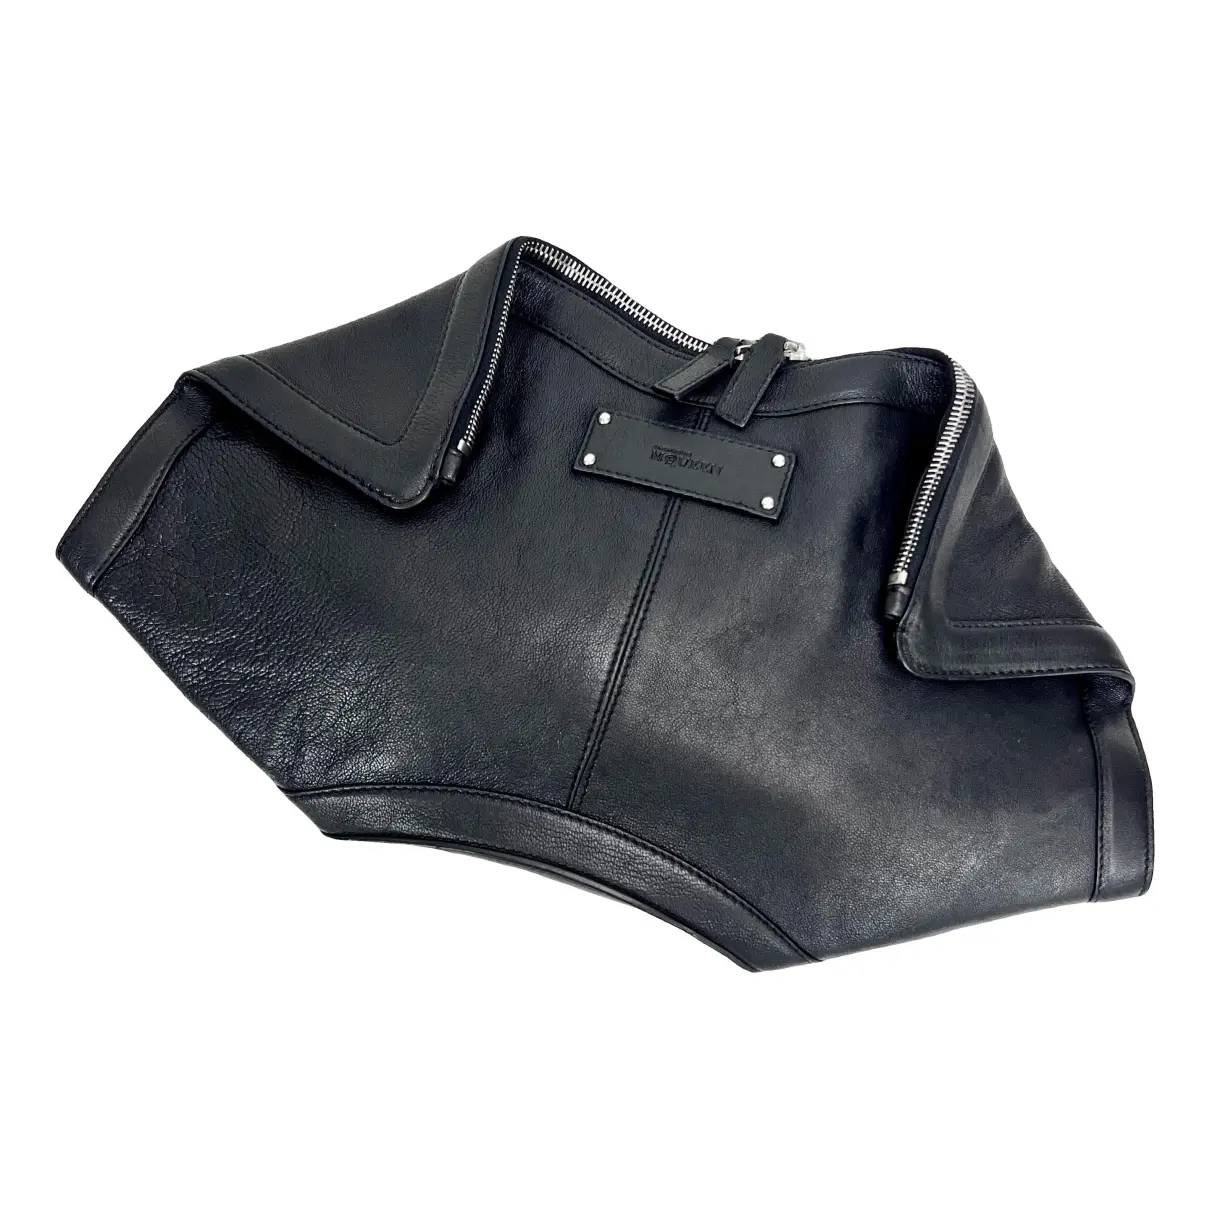 Manta leather clutch bag